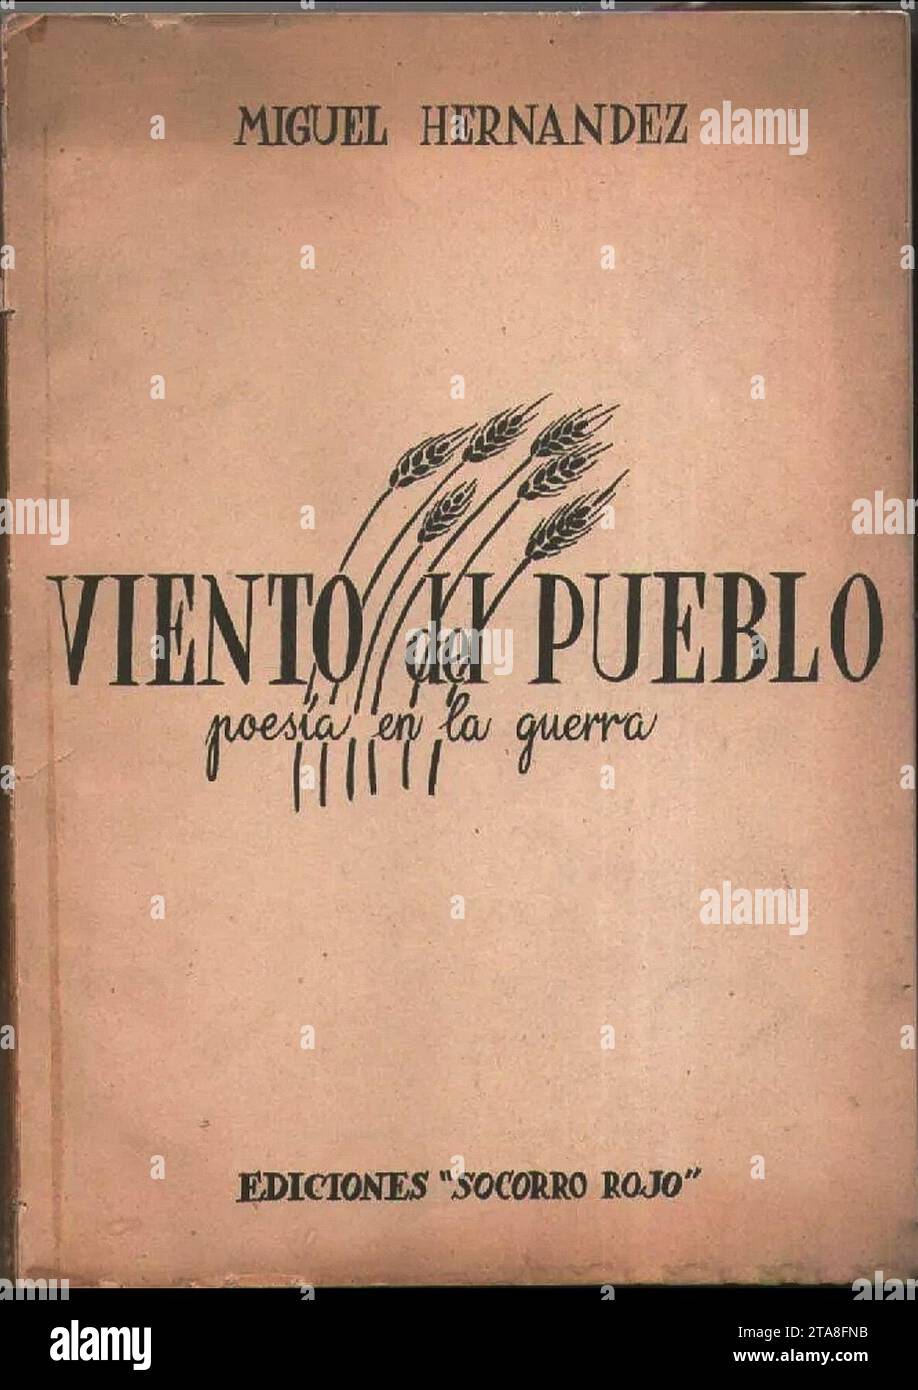 Viento del pueblo. Miguel Hernández, 1937. Stock Photo